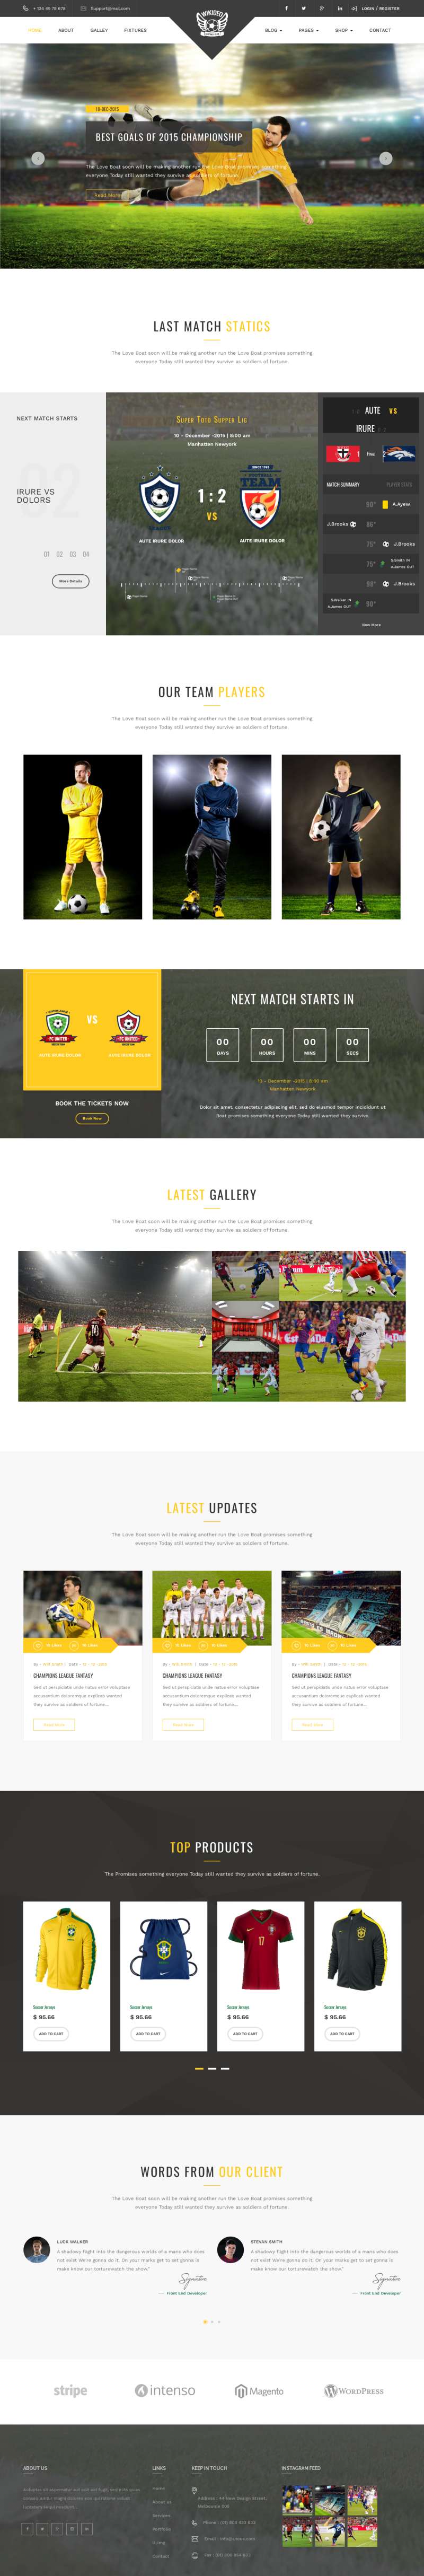 世界杯足球体育用品电商网站html模板